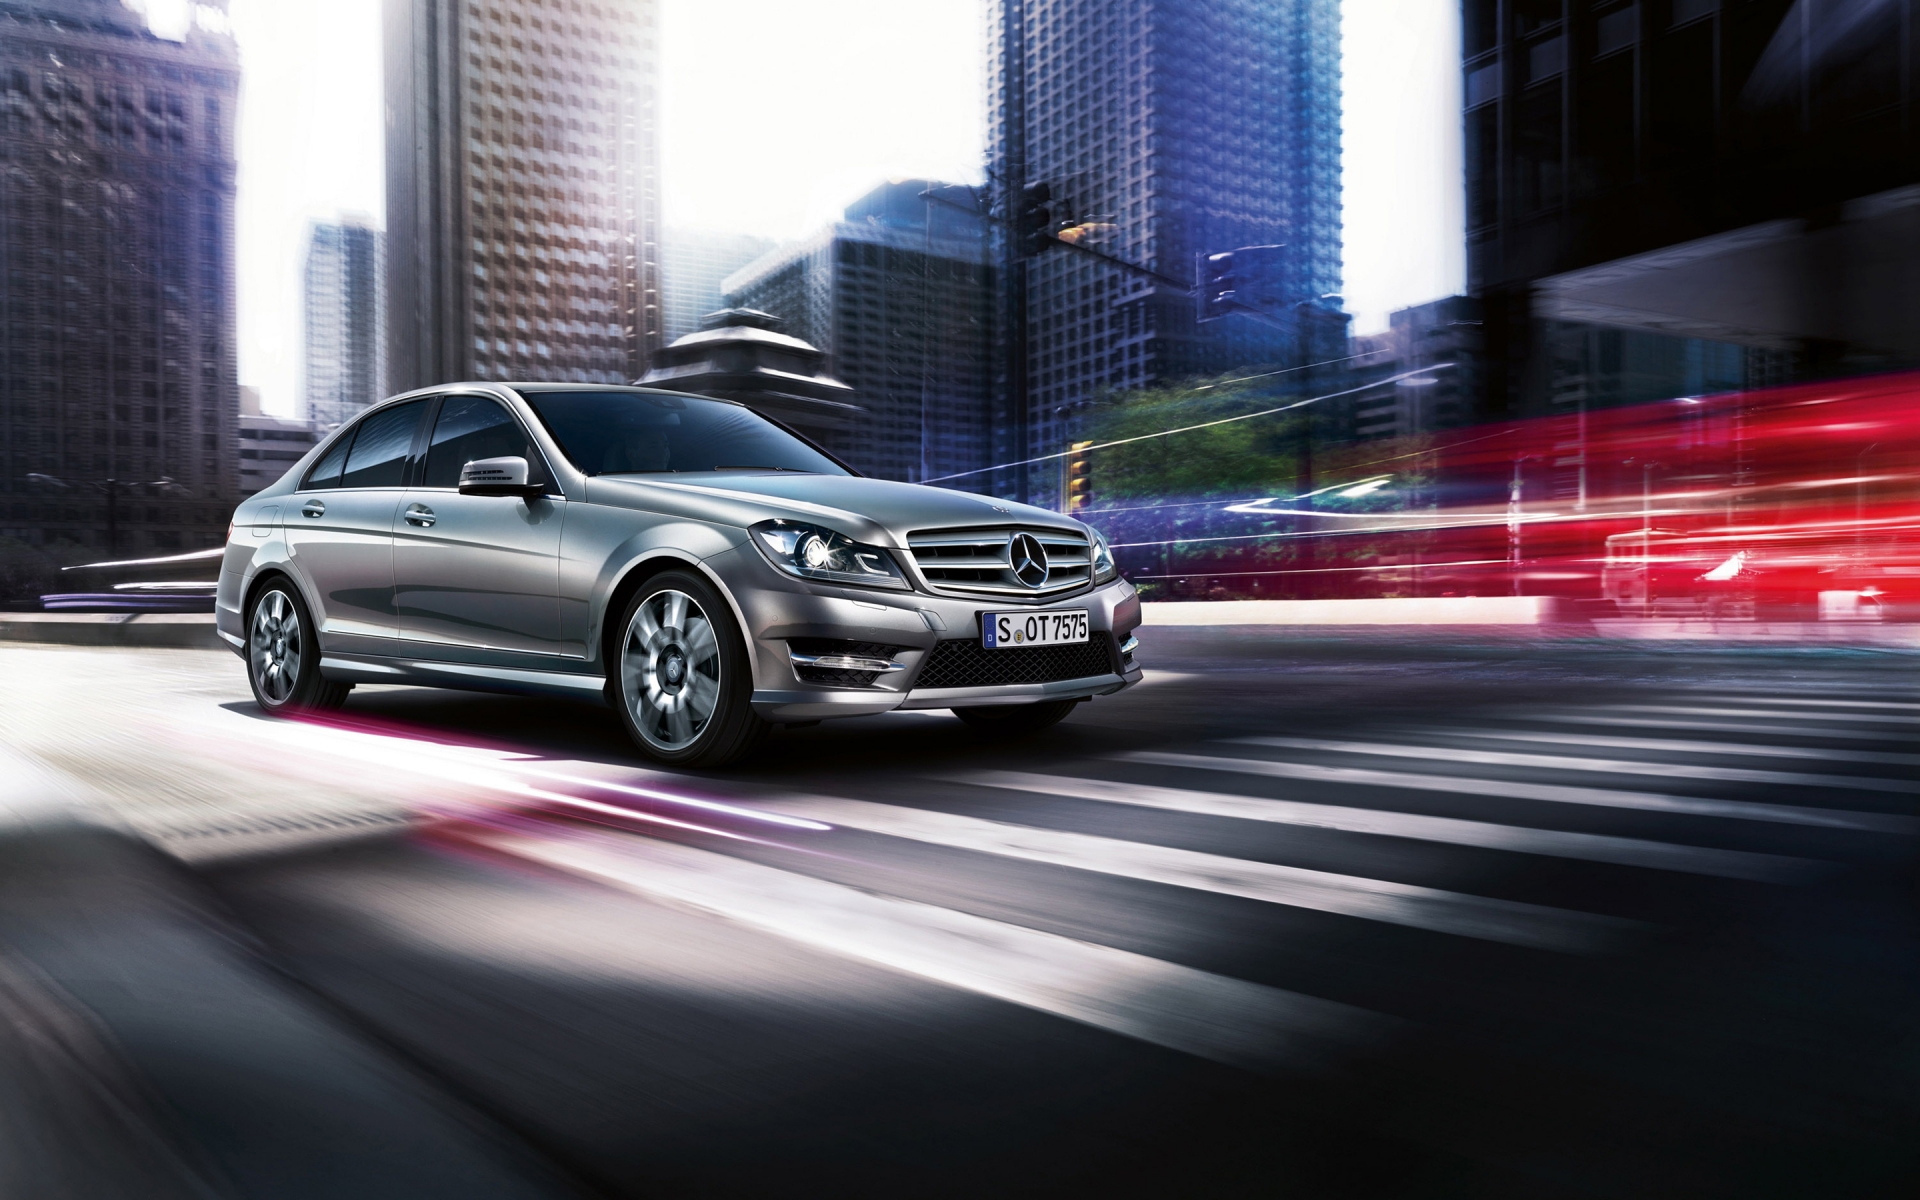 2013 Mercedes-Benz C Class for 1920 x 1200 widescreen resolution